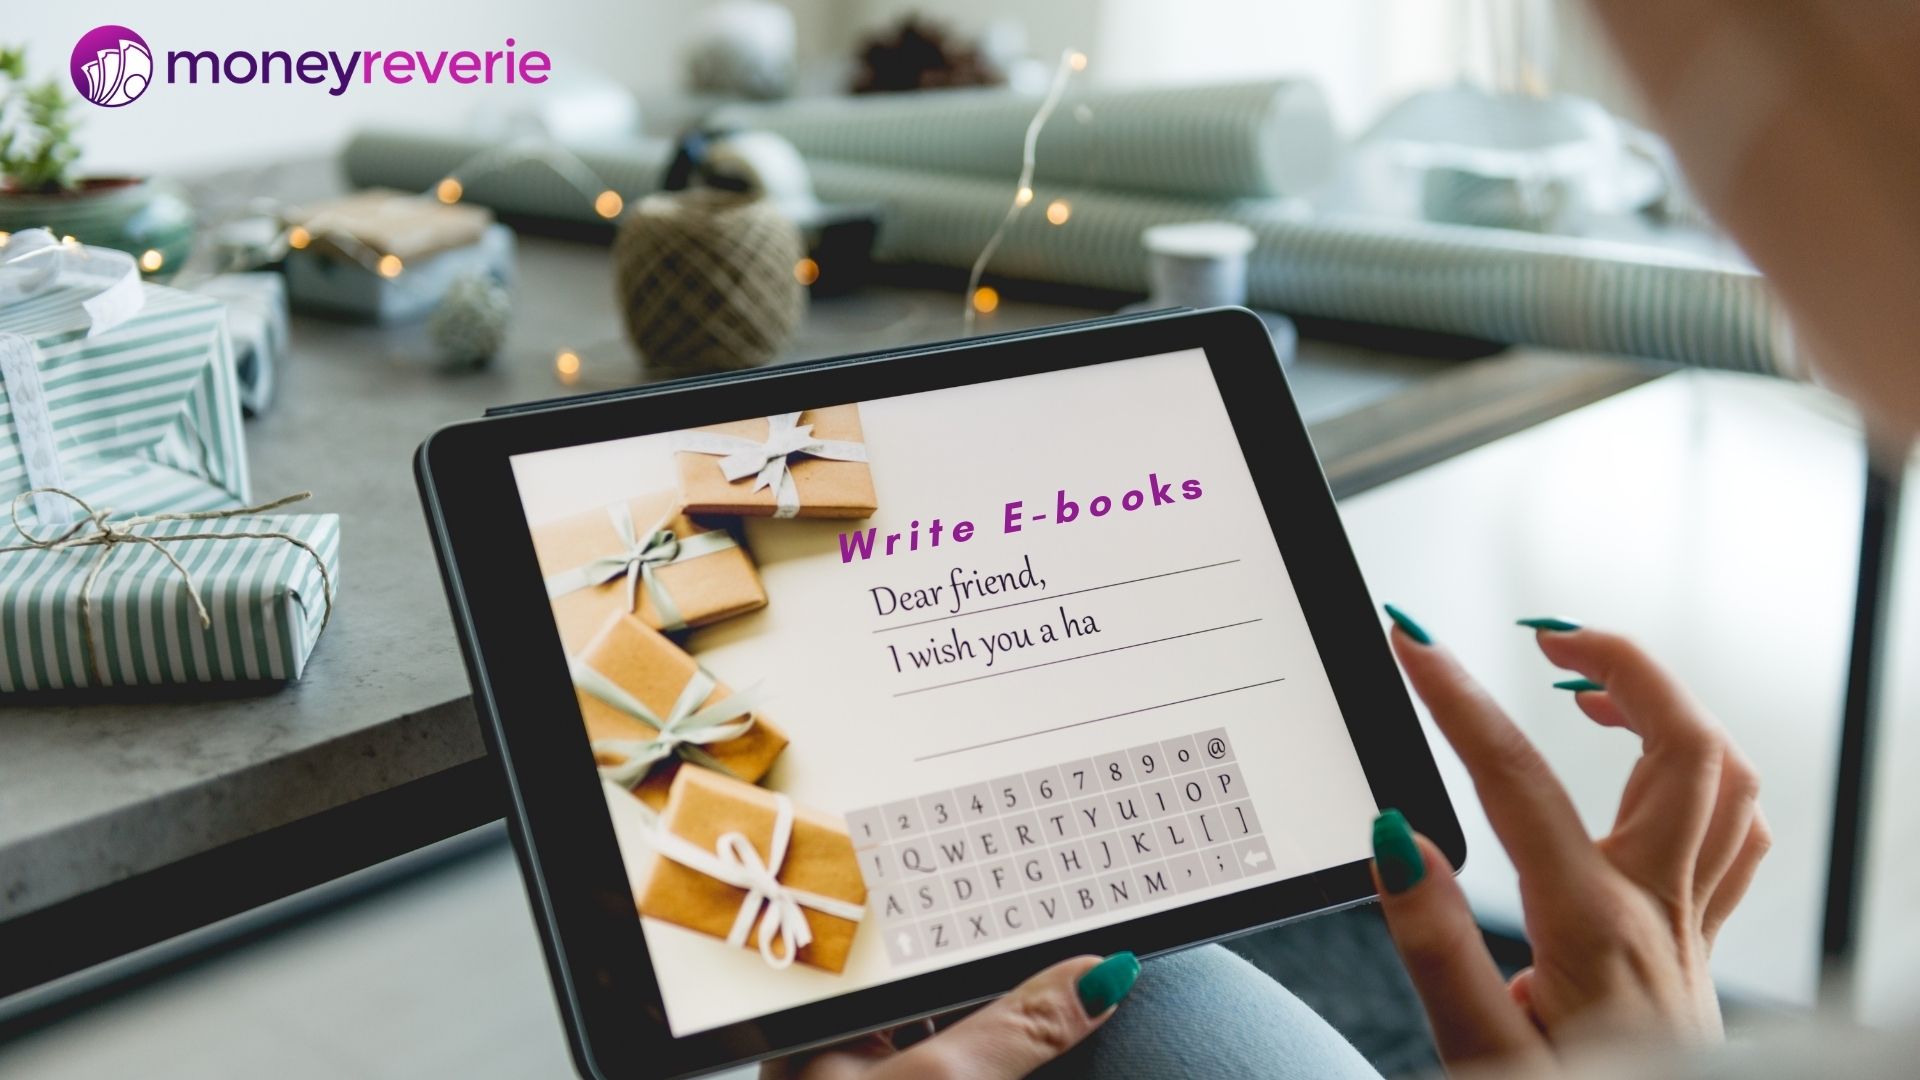 Write E-books- make passive income